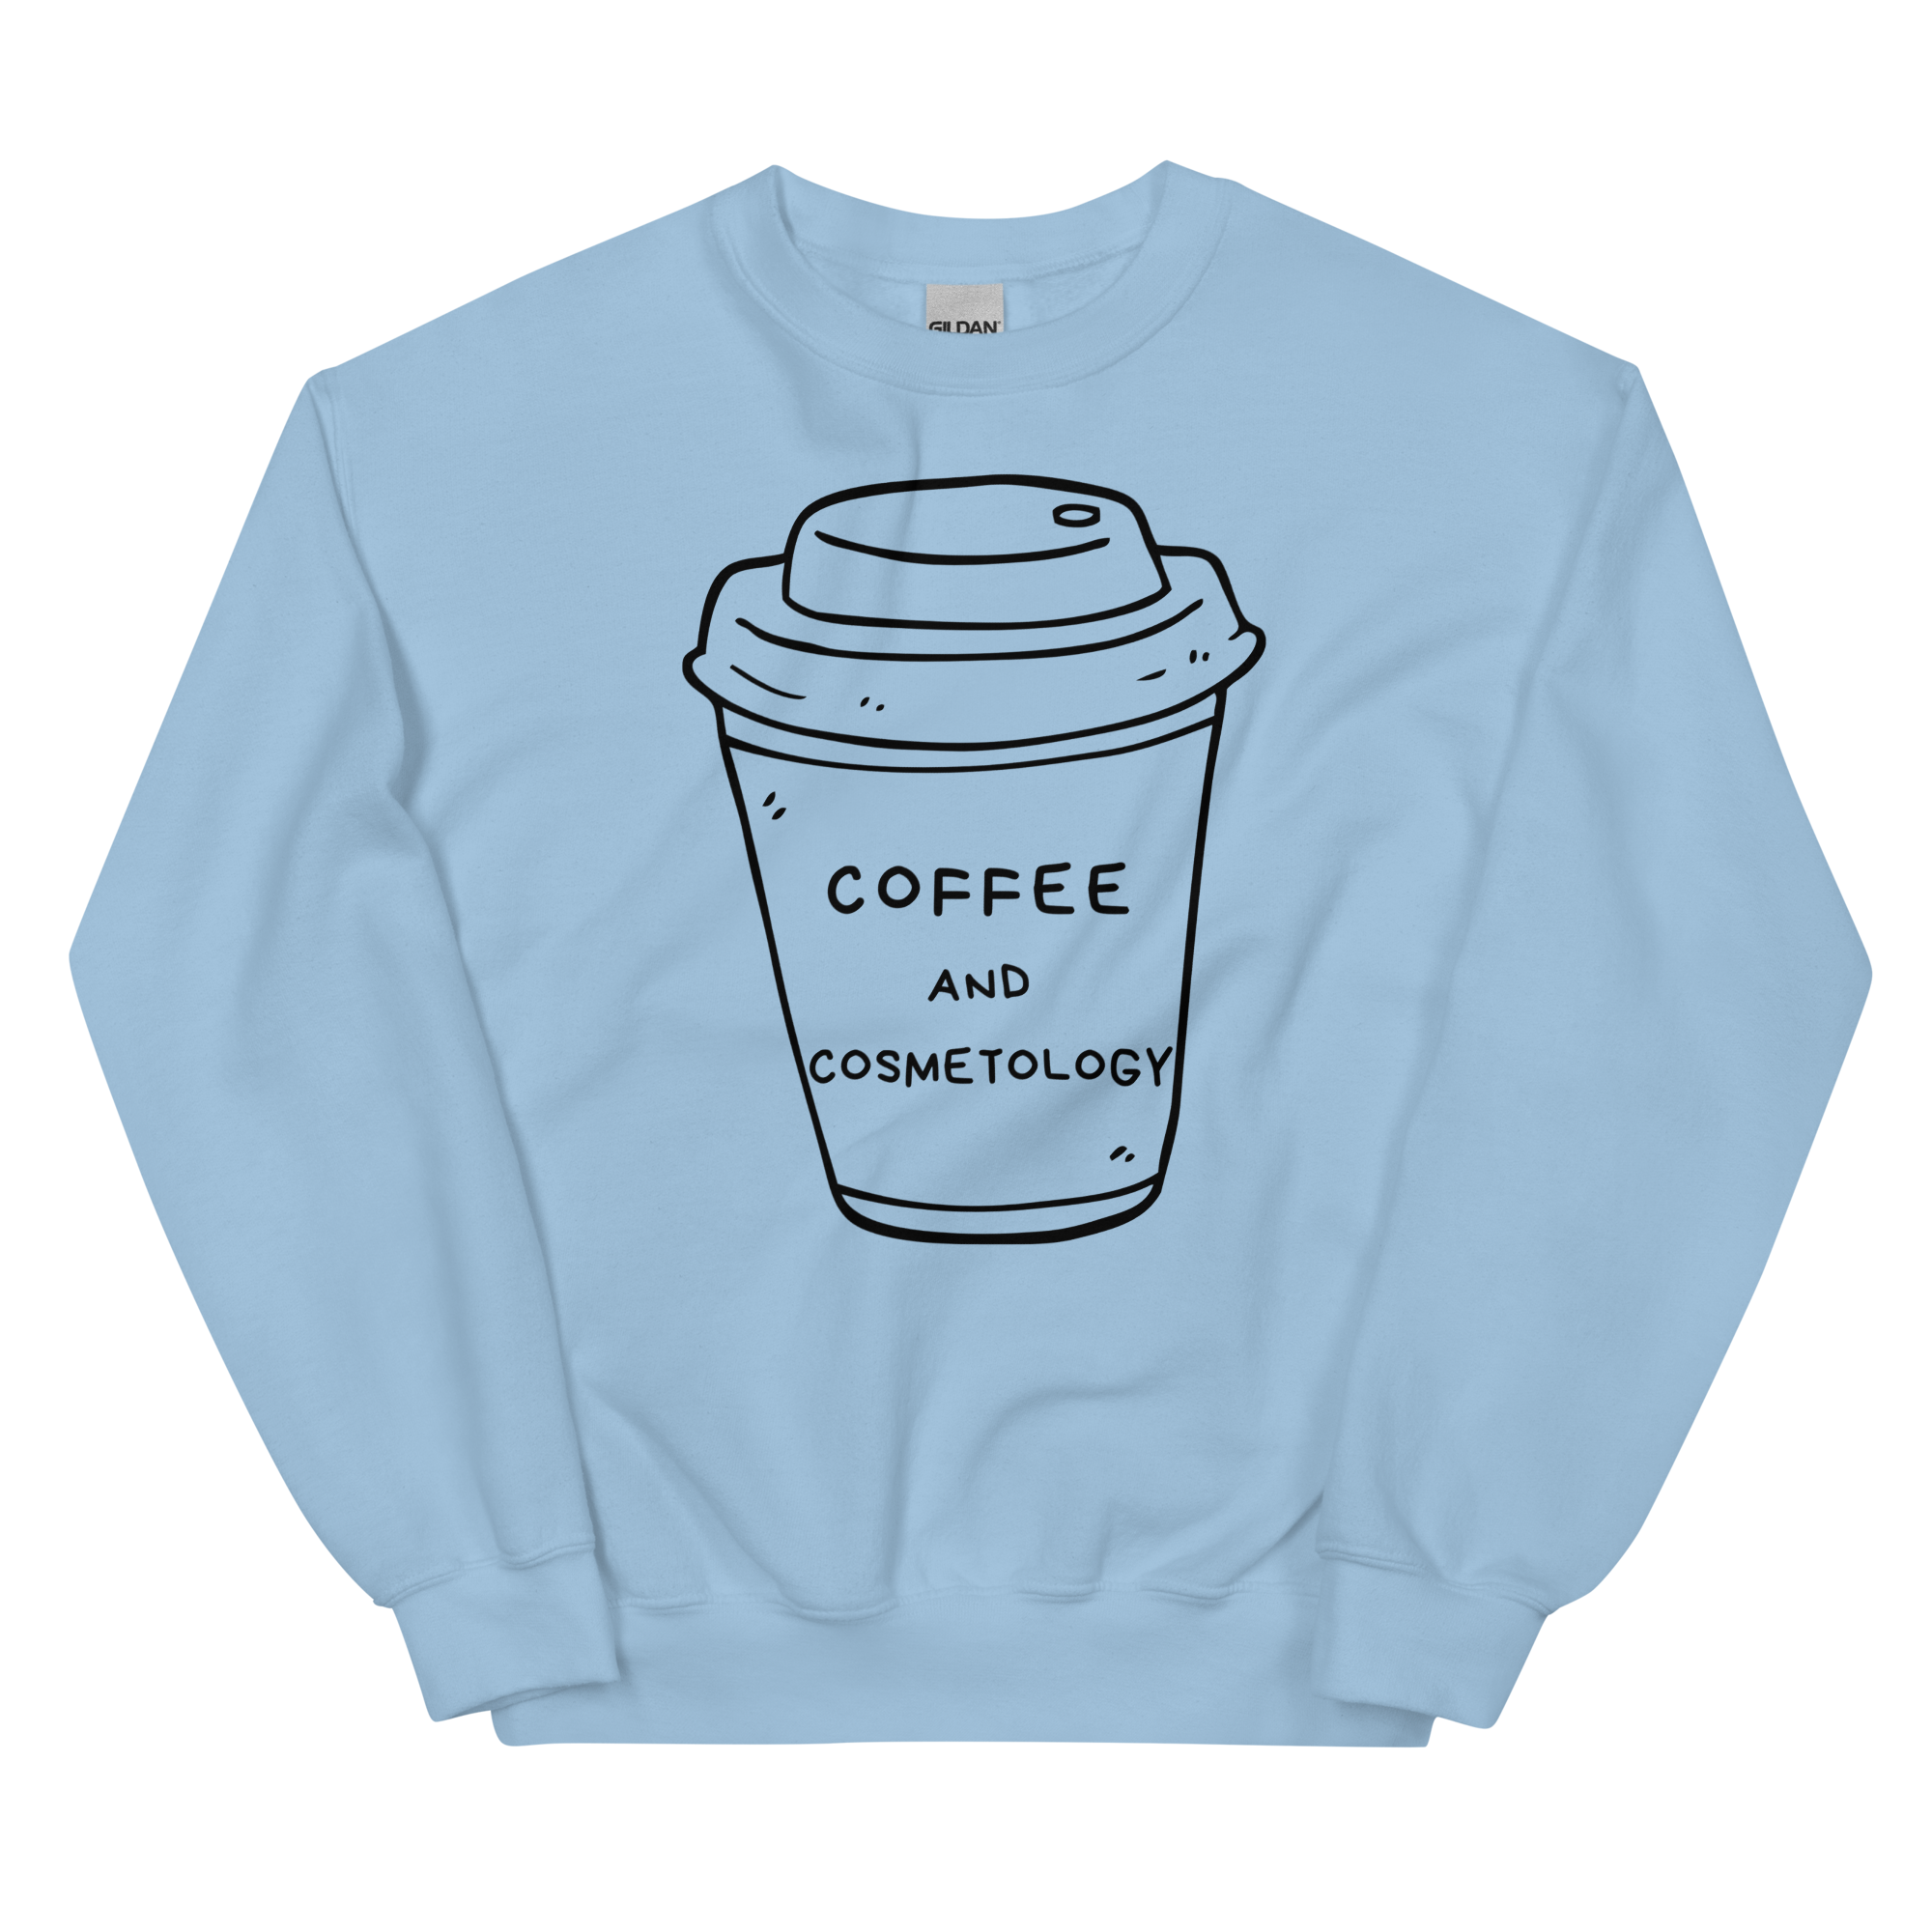 Coffee and Cosmetology Unisex Crewneck Sweatshirt